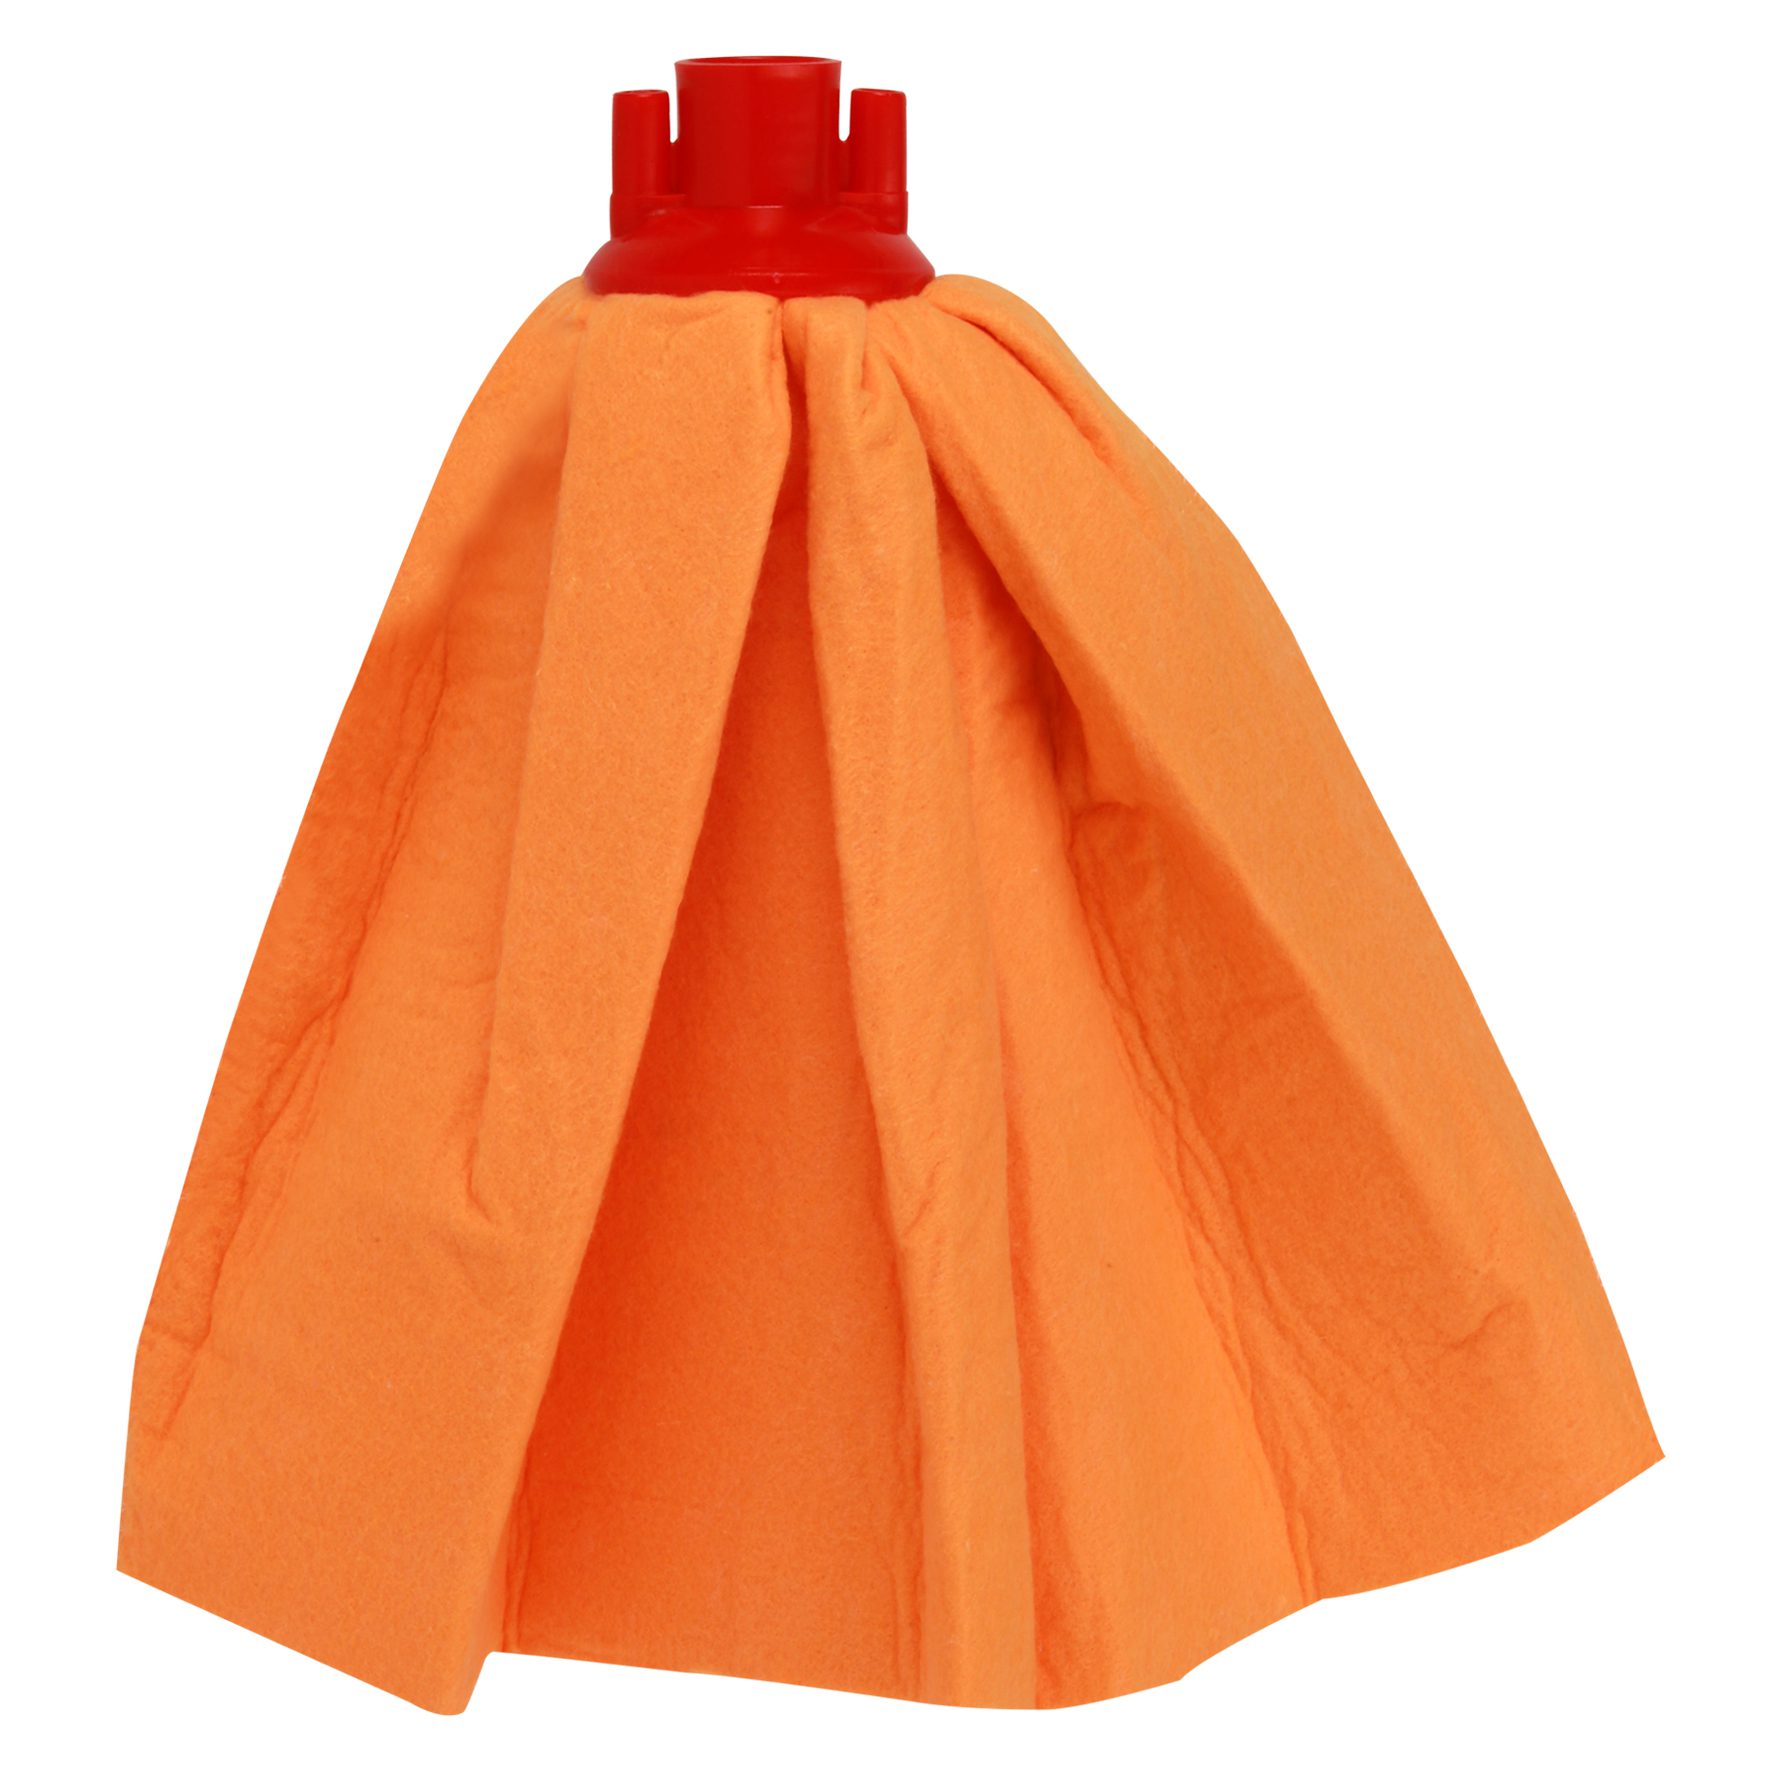 Household "skirt" type mop, 86% viscose - 14% polypropylene